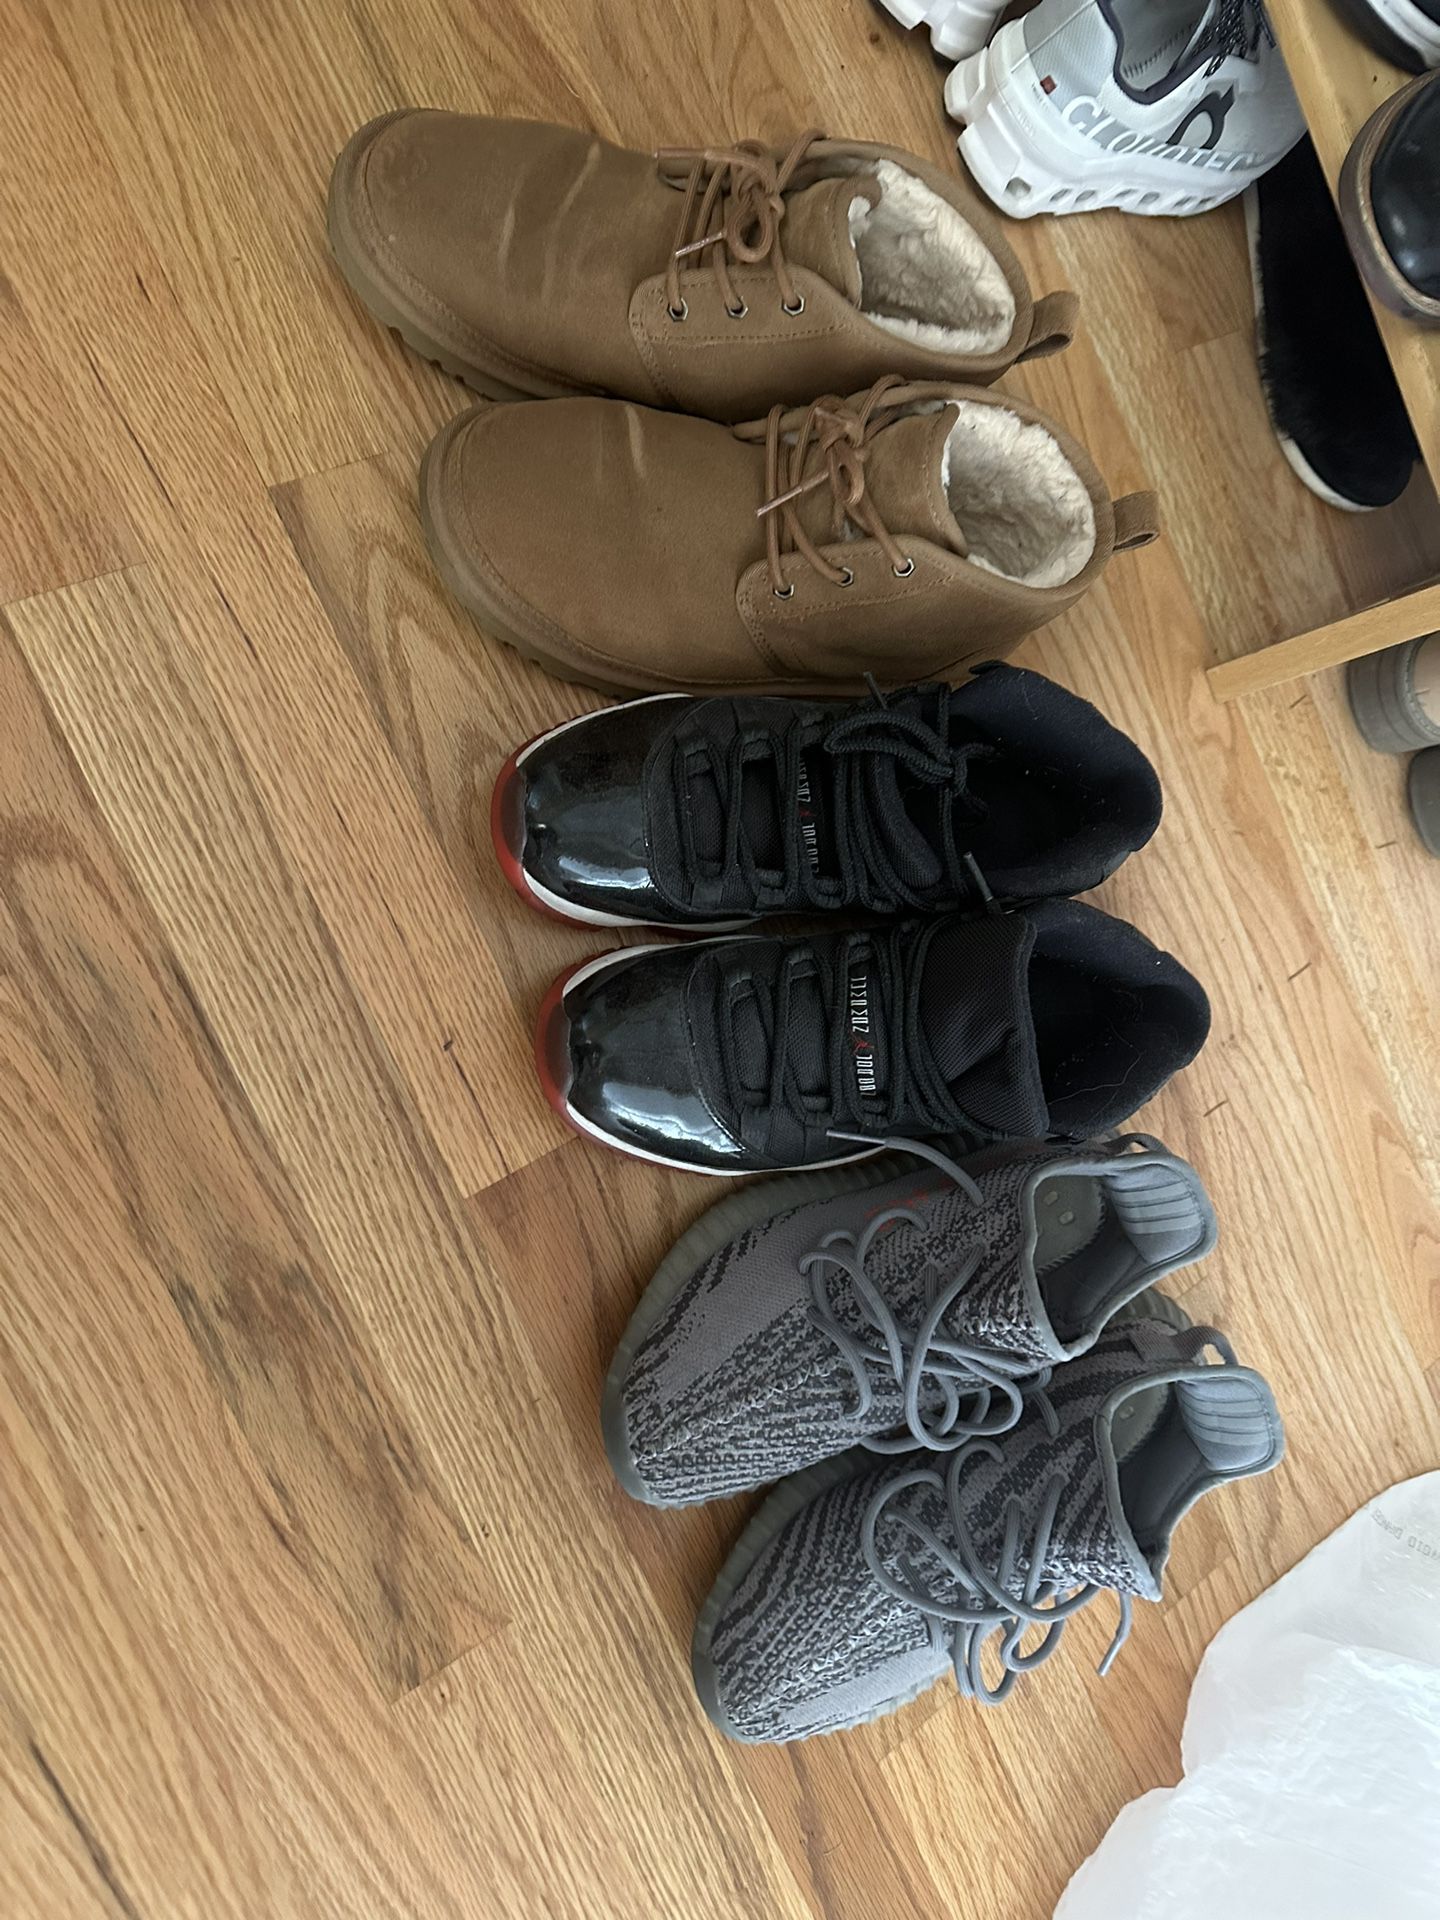 Size 9 Jordan’s/Yeezy/Ugg Boots 